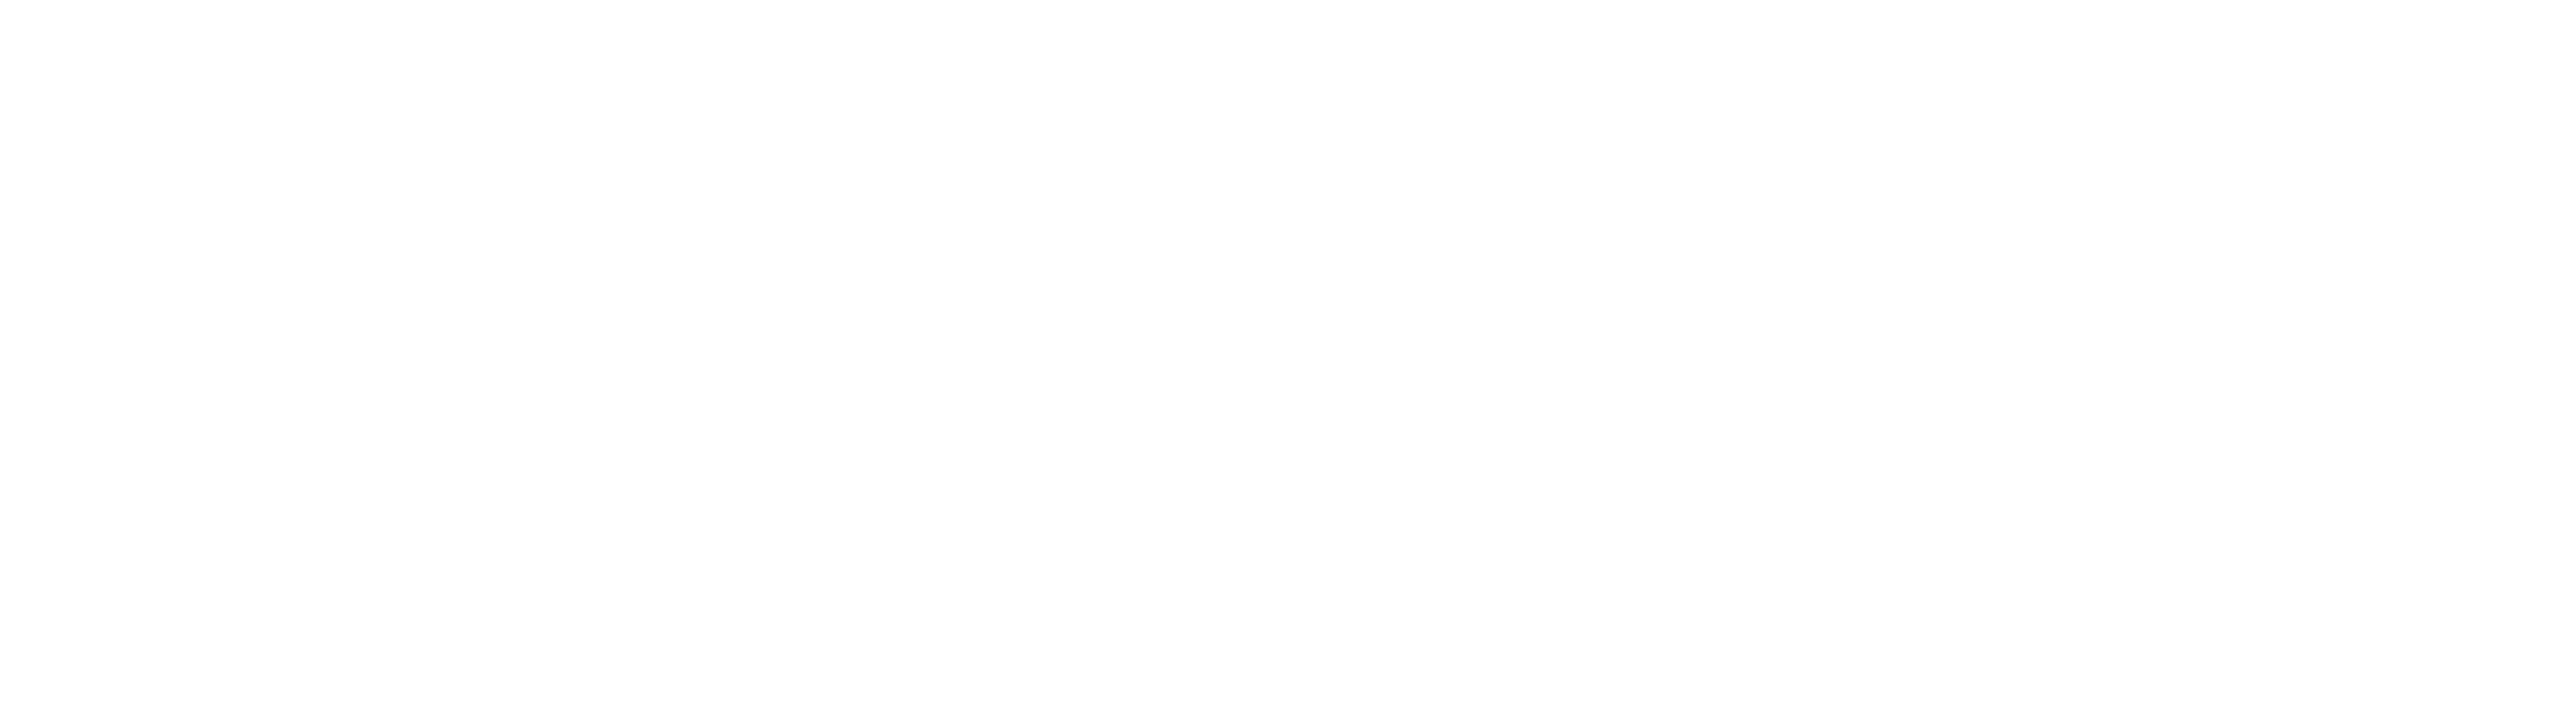 Sparkling Water Guy Logo